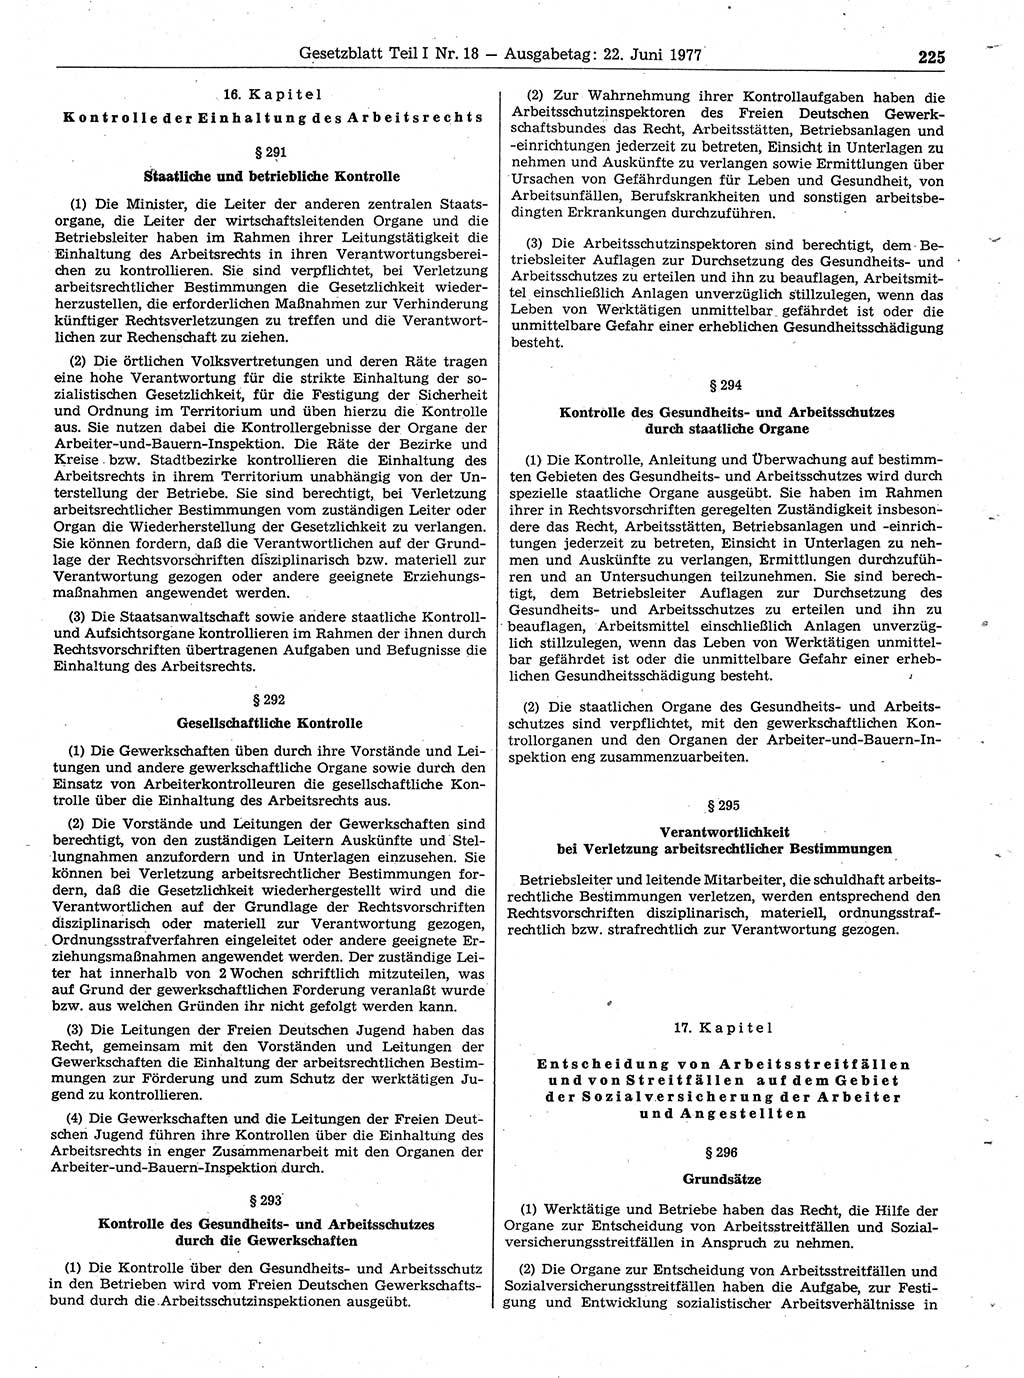 Gesetzblatt (GBl.) der Deutschen Demokratischen Republik (DDR) Teil Ⅰ 1977, Seite 225 (GBl. DDR Ⅰ 1977, S. 225)